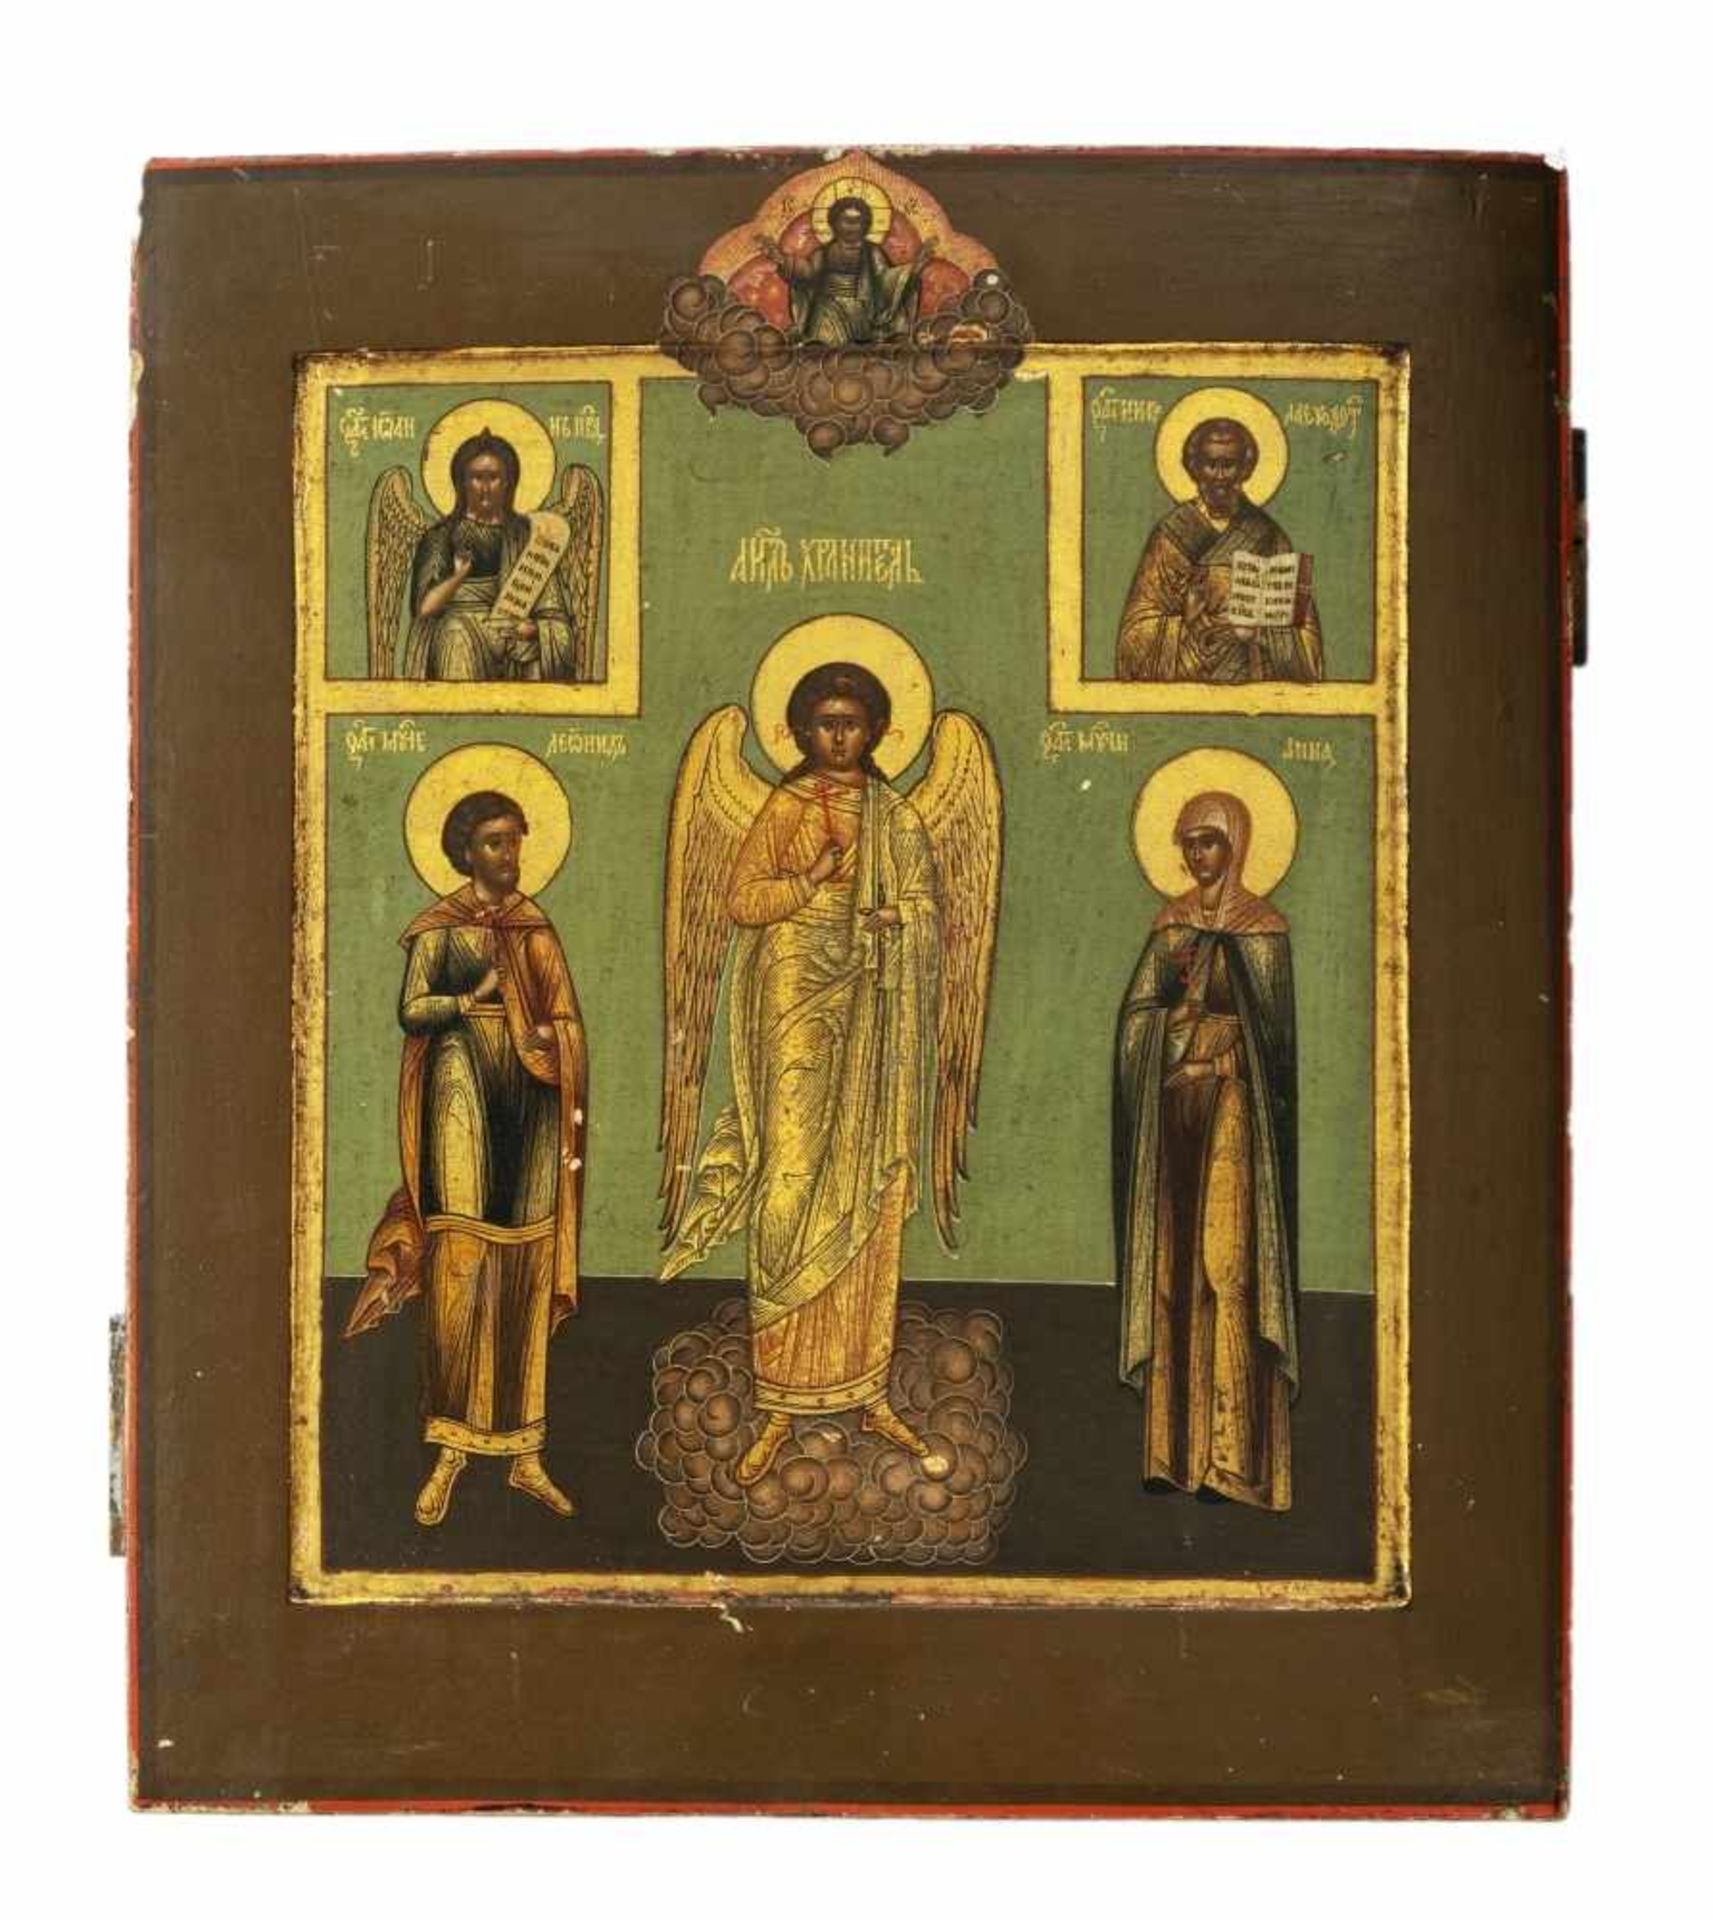 Hl. Schutzengel und HeiligeRussische Ikone, Tempera / Holz, Ende 19. Jh.31,2 x 26,8 cmIn der